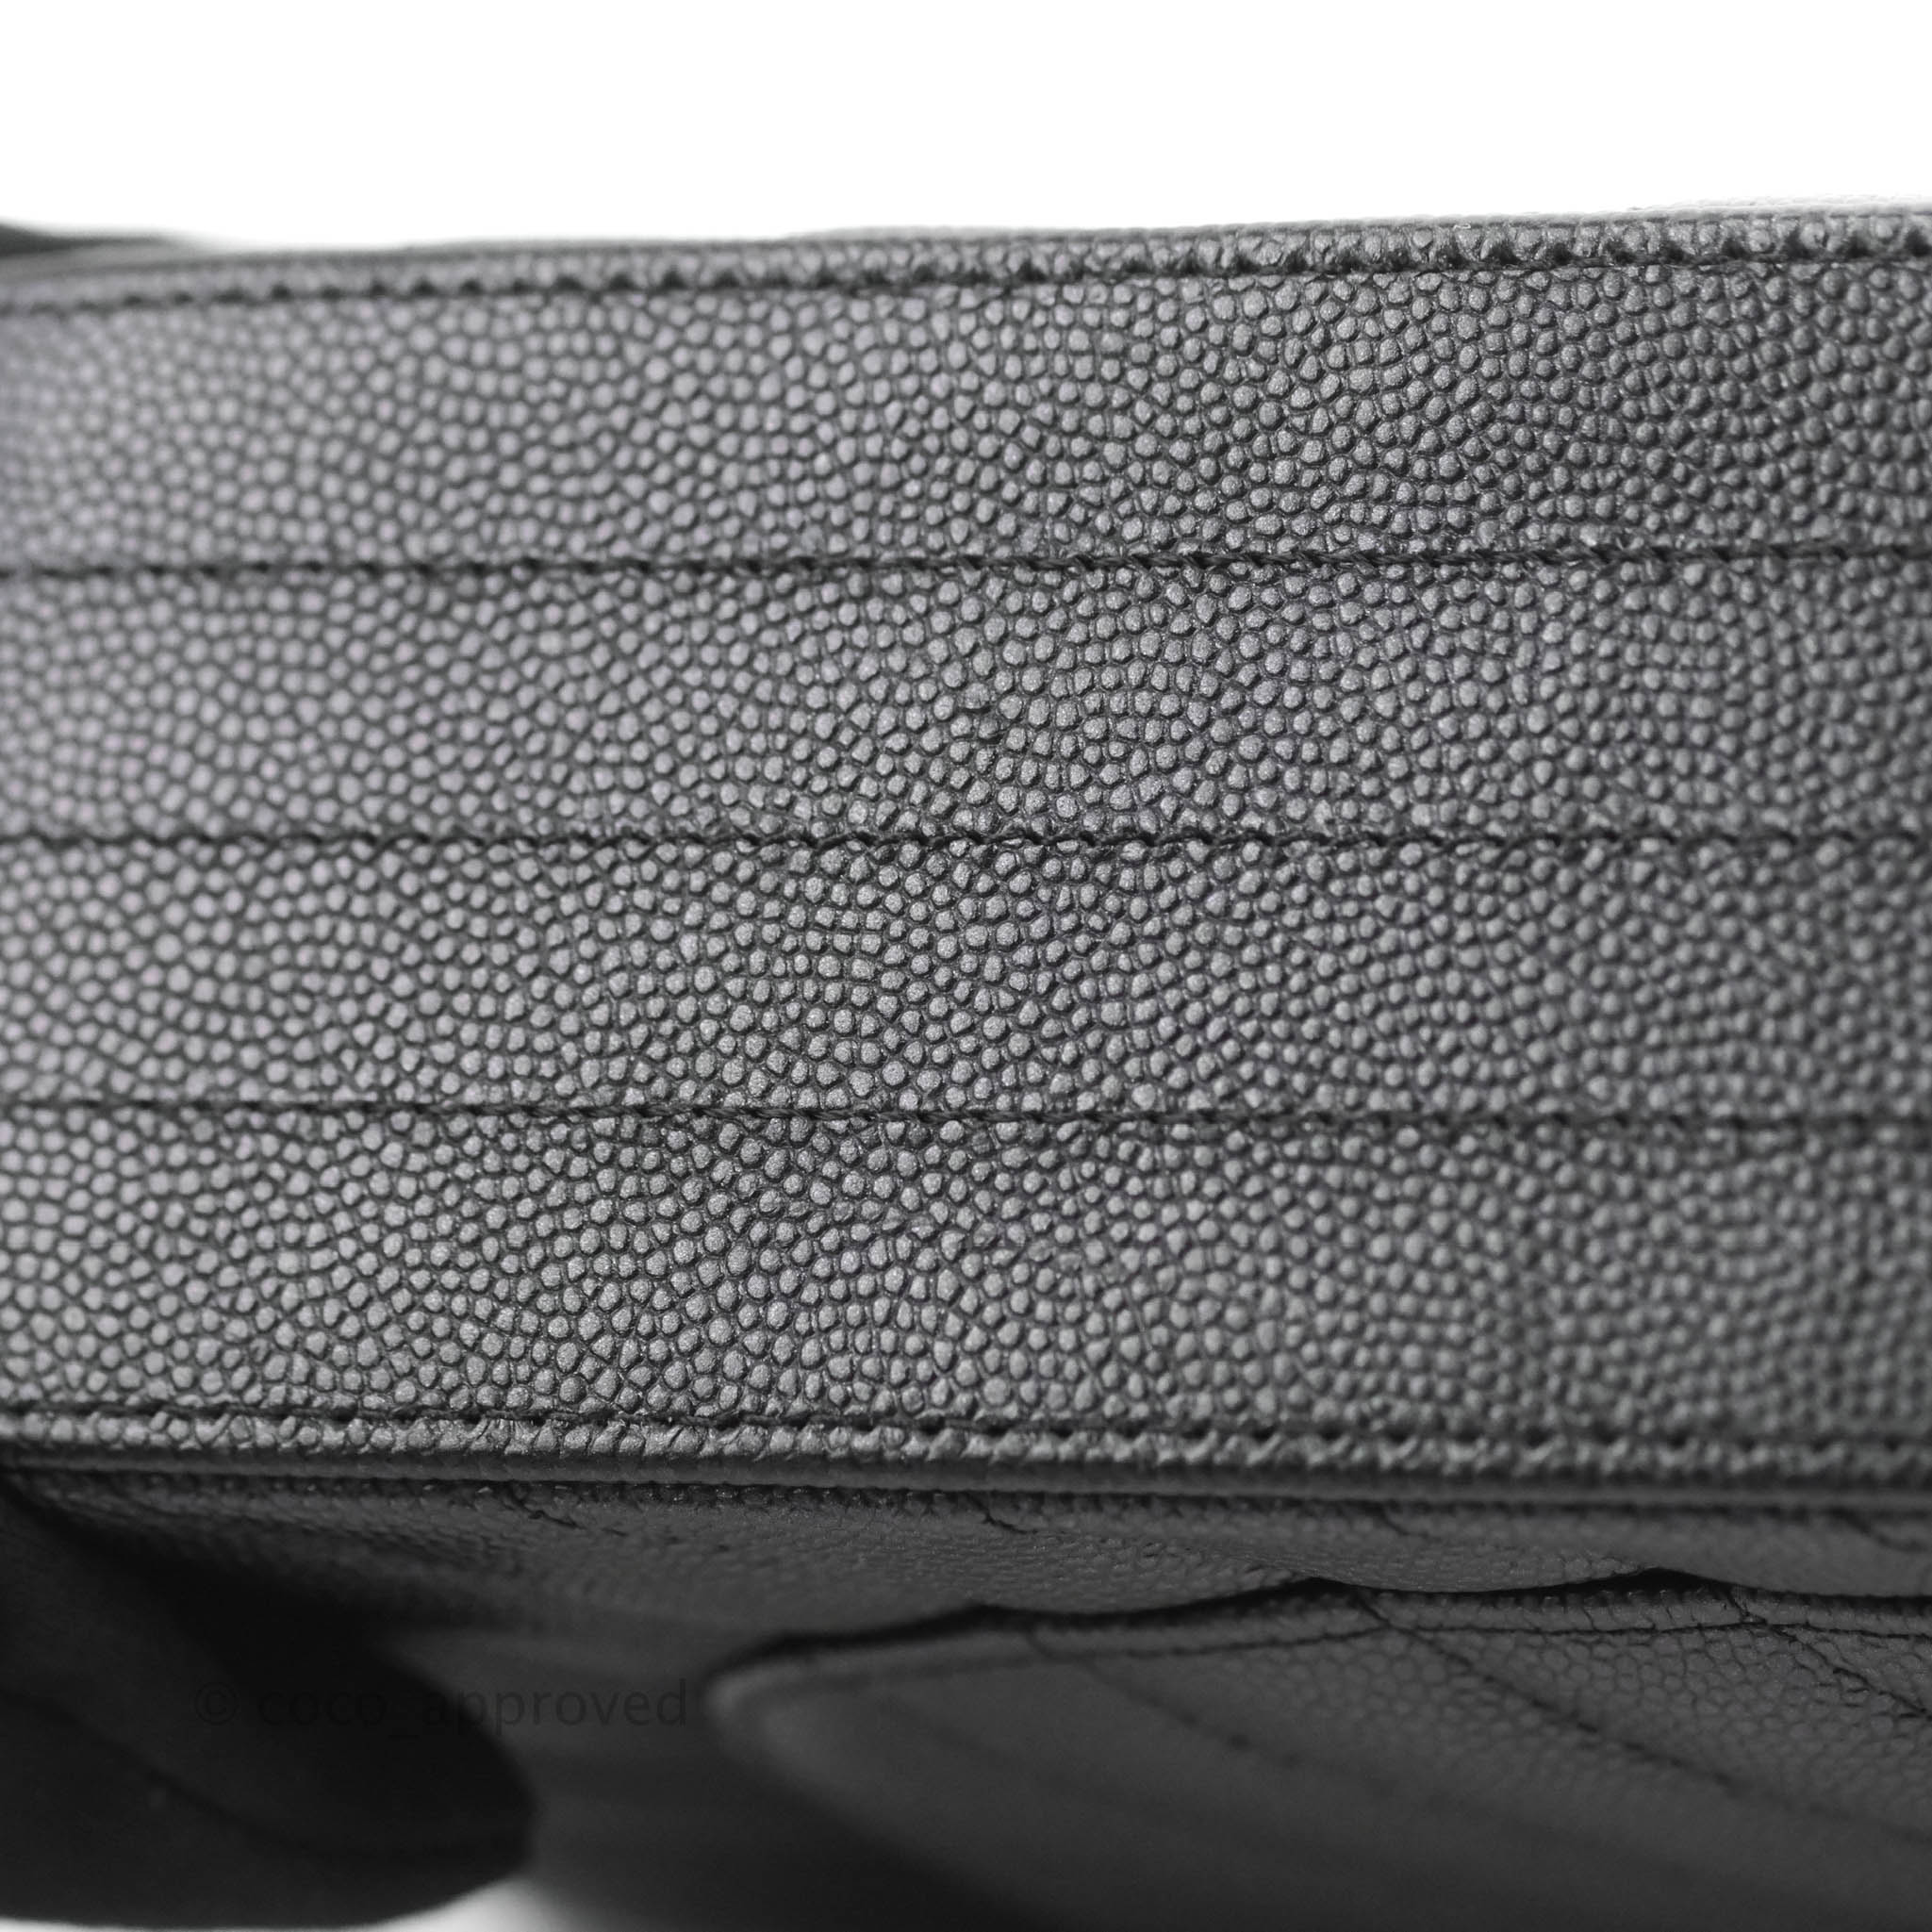 Chanel bag authentic Black Caviar leather medium classic flap Ruthenium  hardware